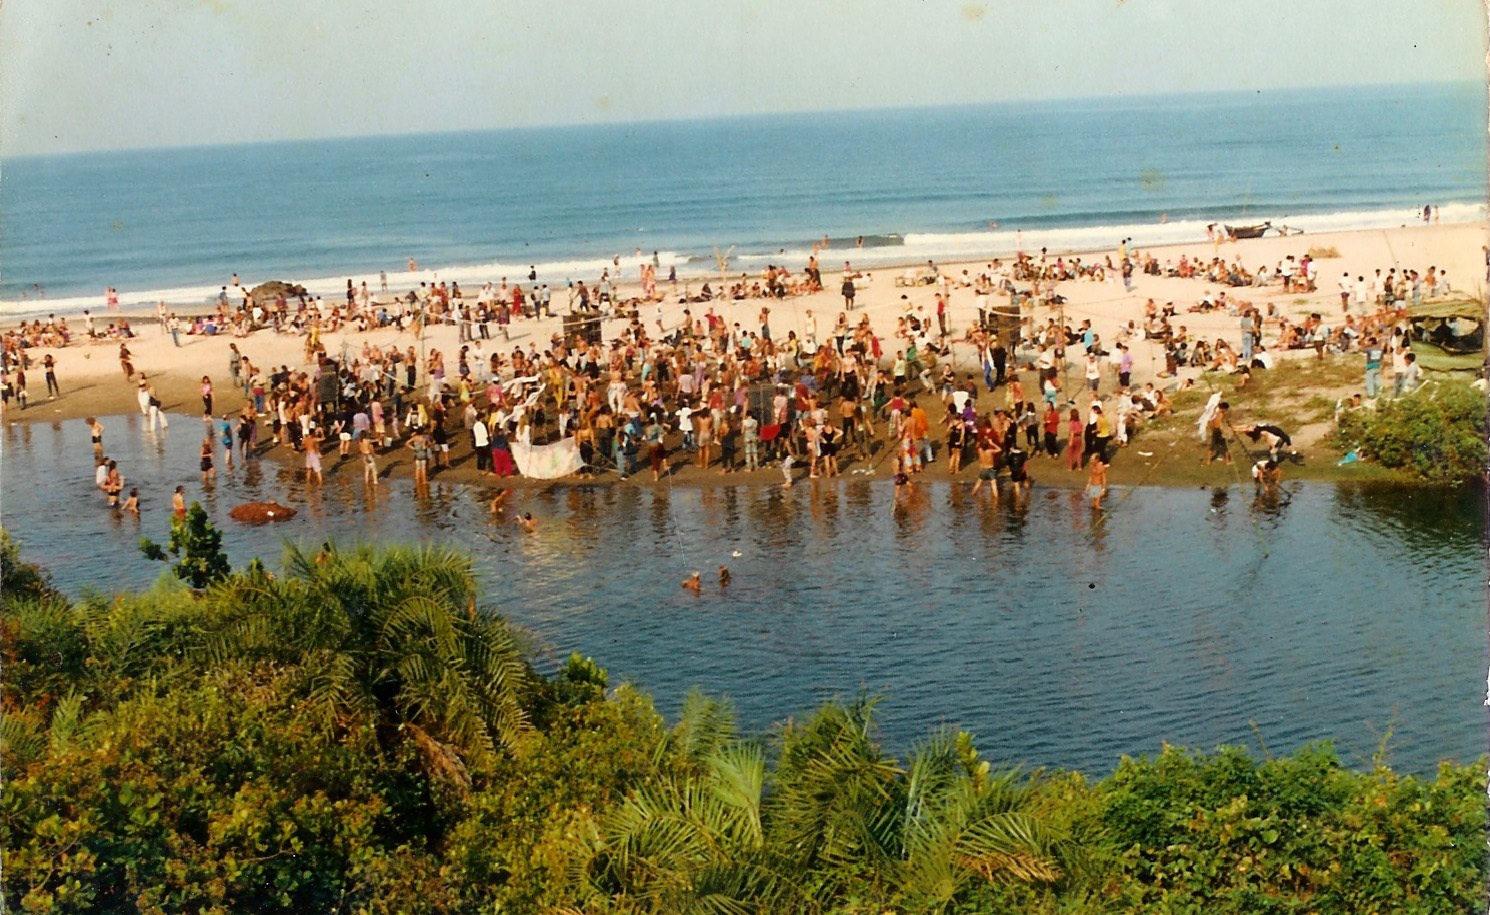 Wisatawan memadati pantai Arambol untuk berpesta